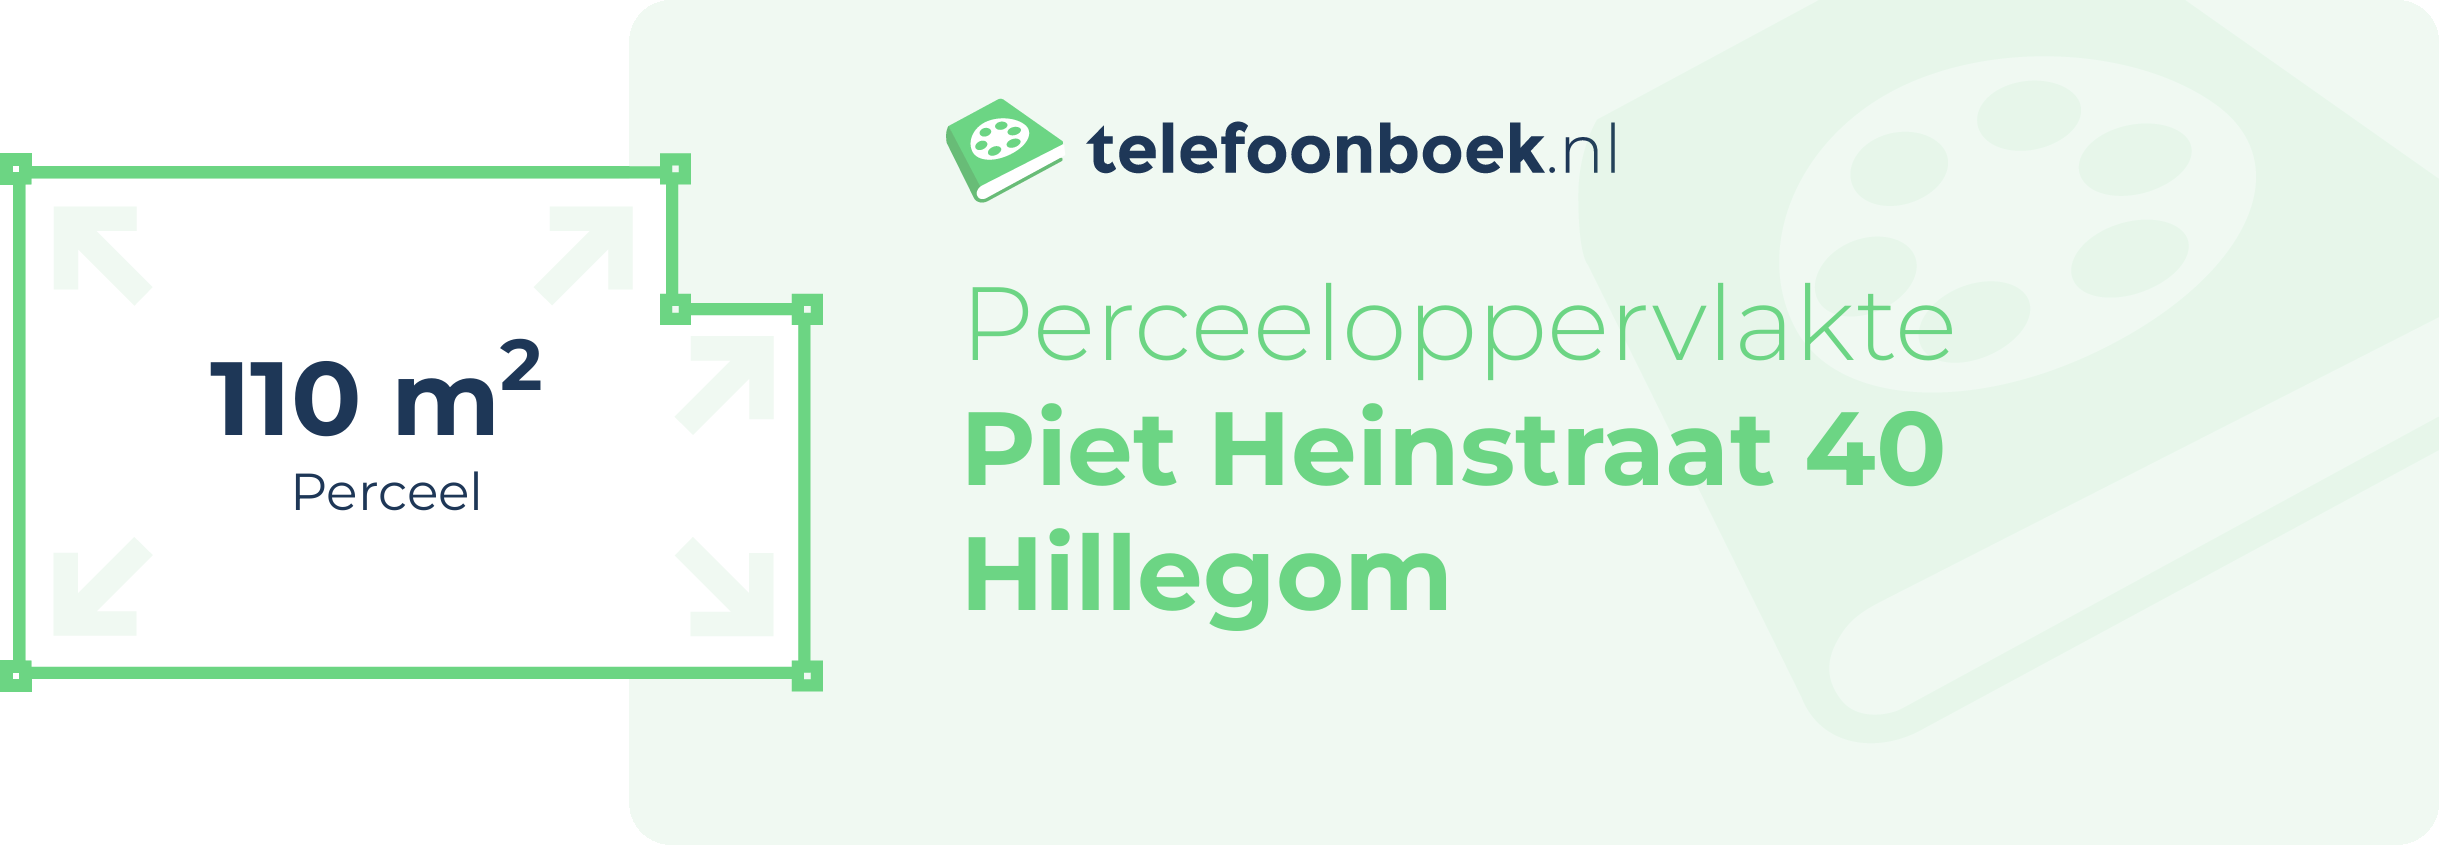 Perceeloppervlakte Piet Heinstraat 40 Hillegom